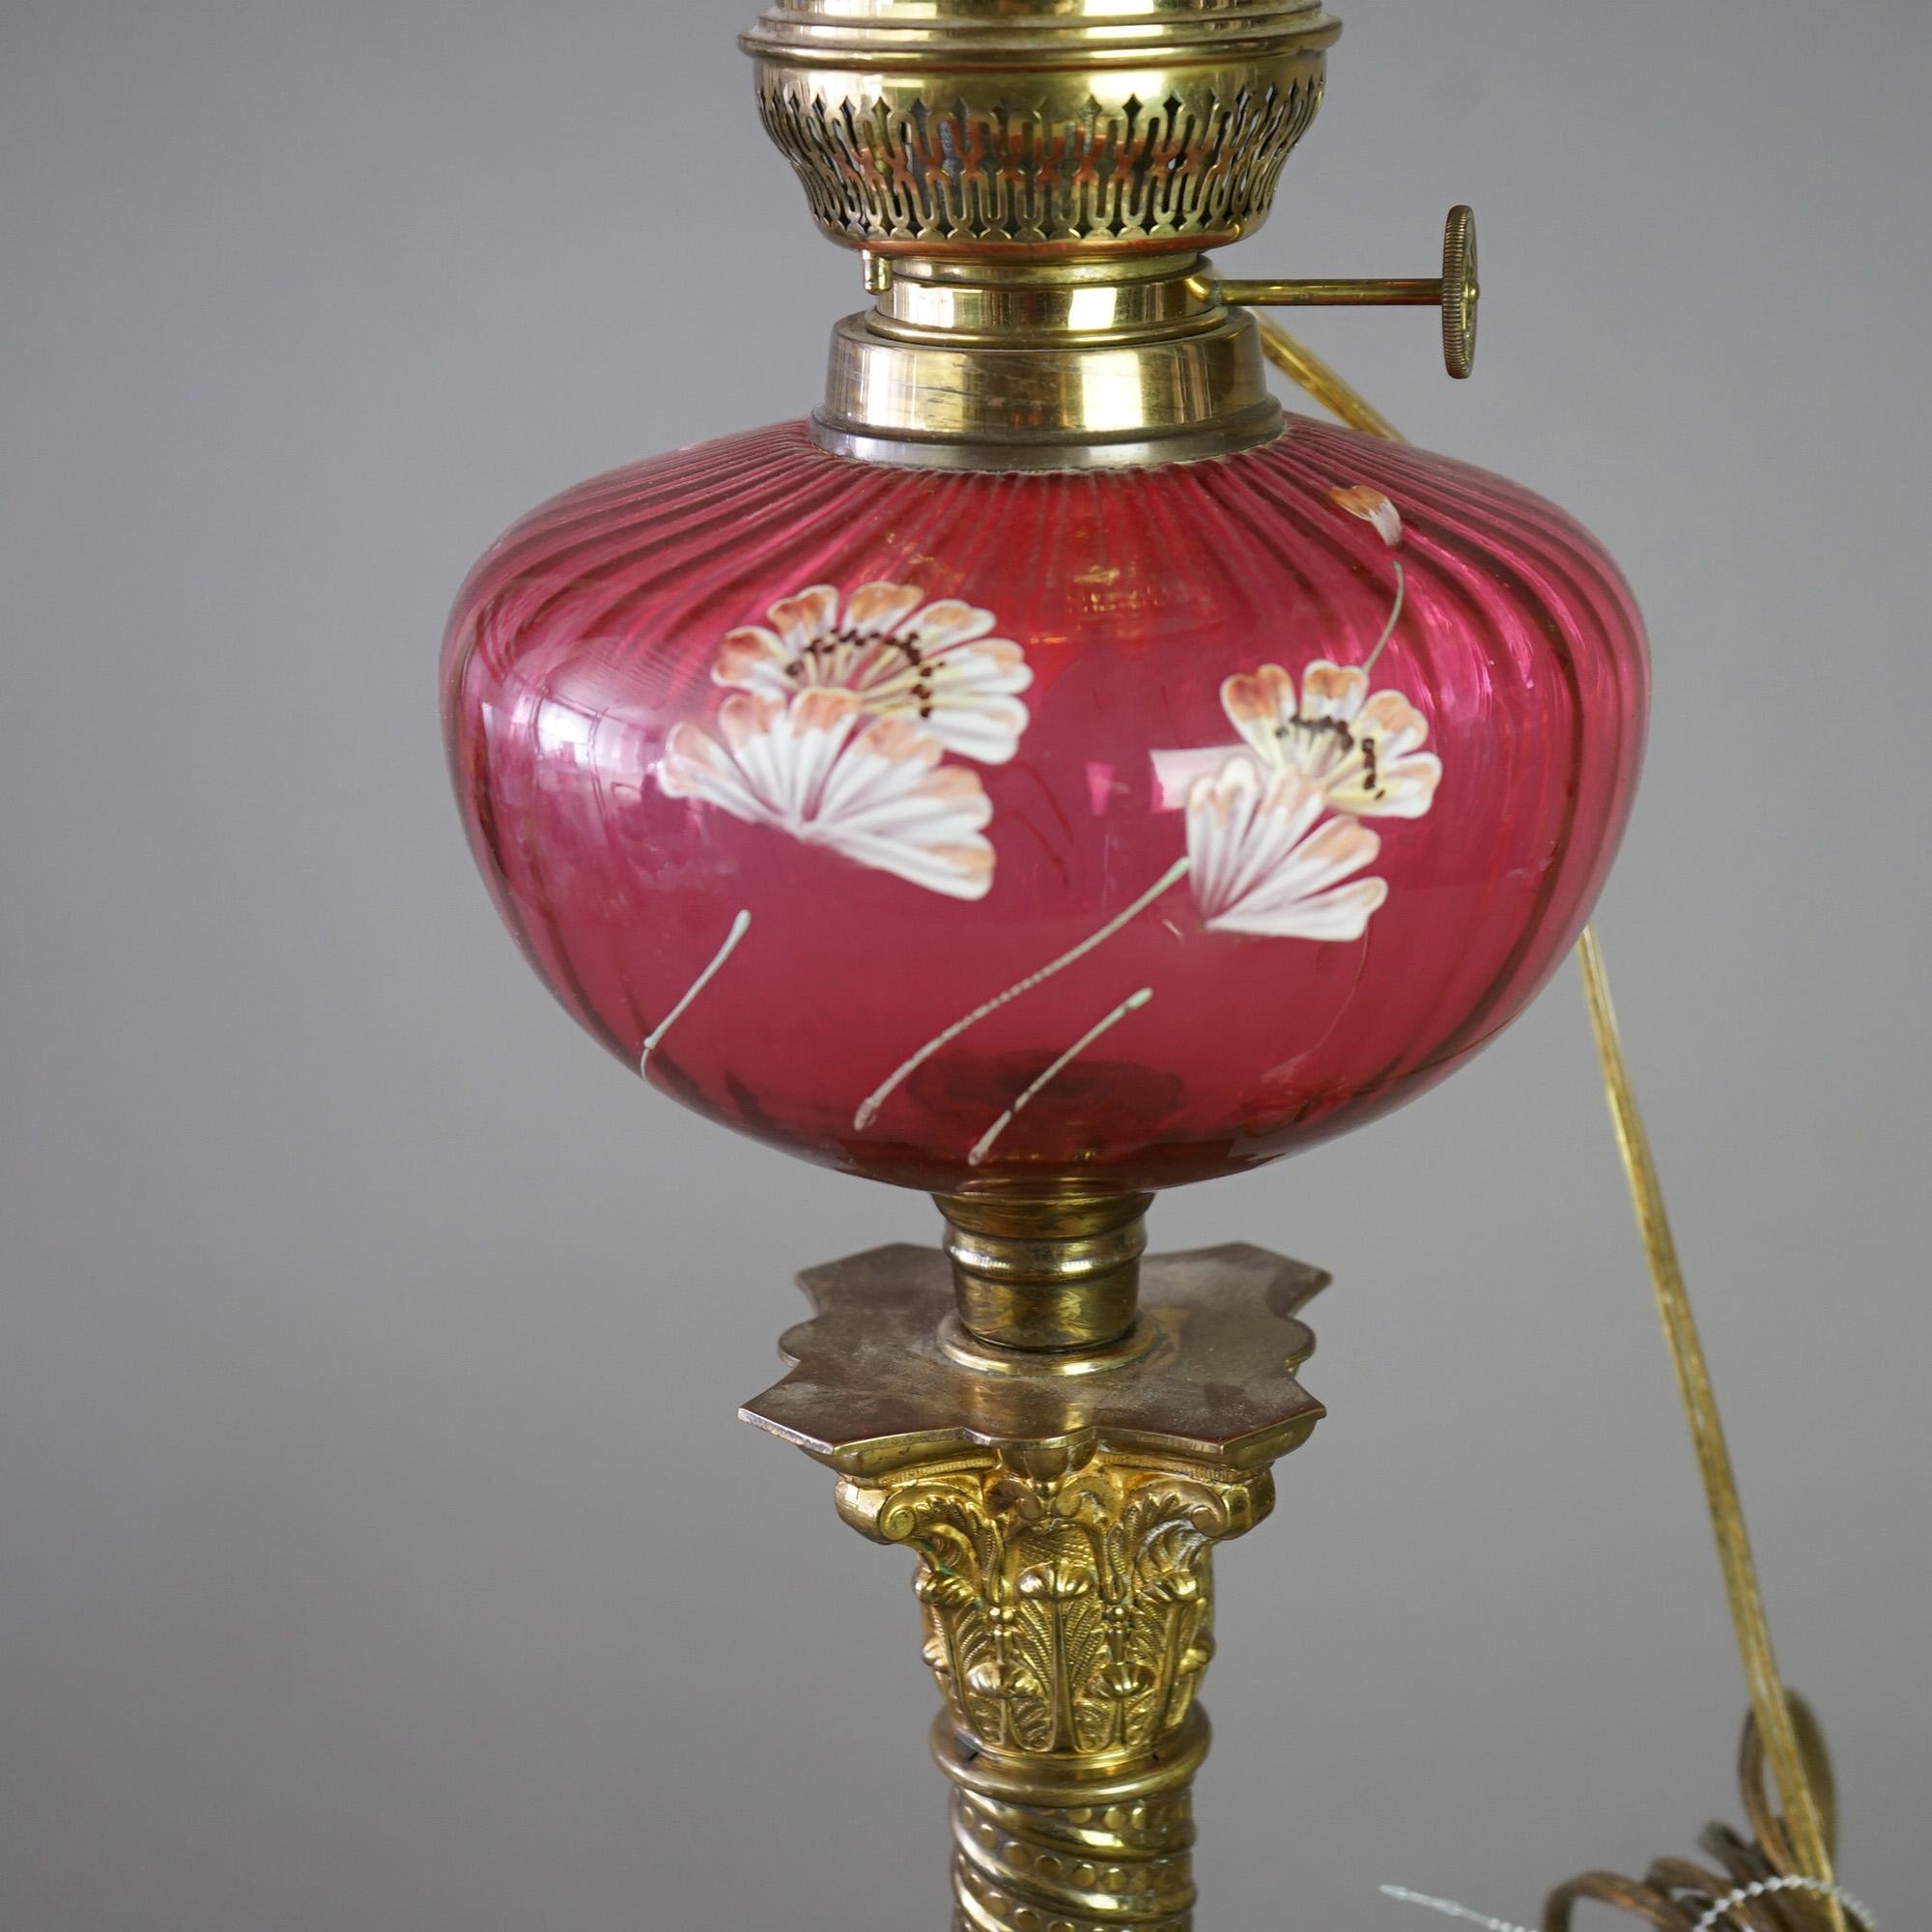 Eine antike viktorianische Bankett-Lampe bietet Cranberry Glas Rüschen Rand Schatten über Basis mit passenden Glas-Font mit handgemalten Blumen, auf Messing korinthischen Form Spalte, elektrifiziert, C1890

Maße - 30,25 